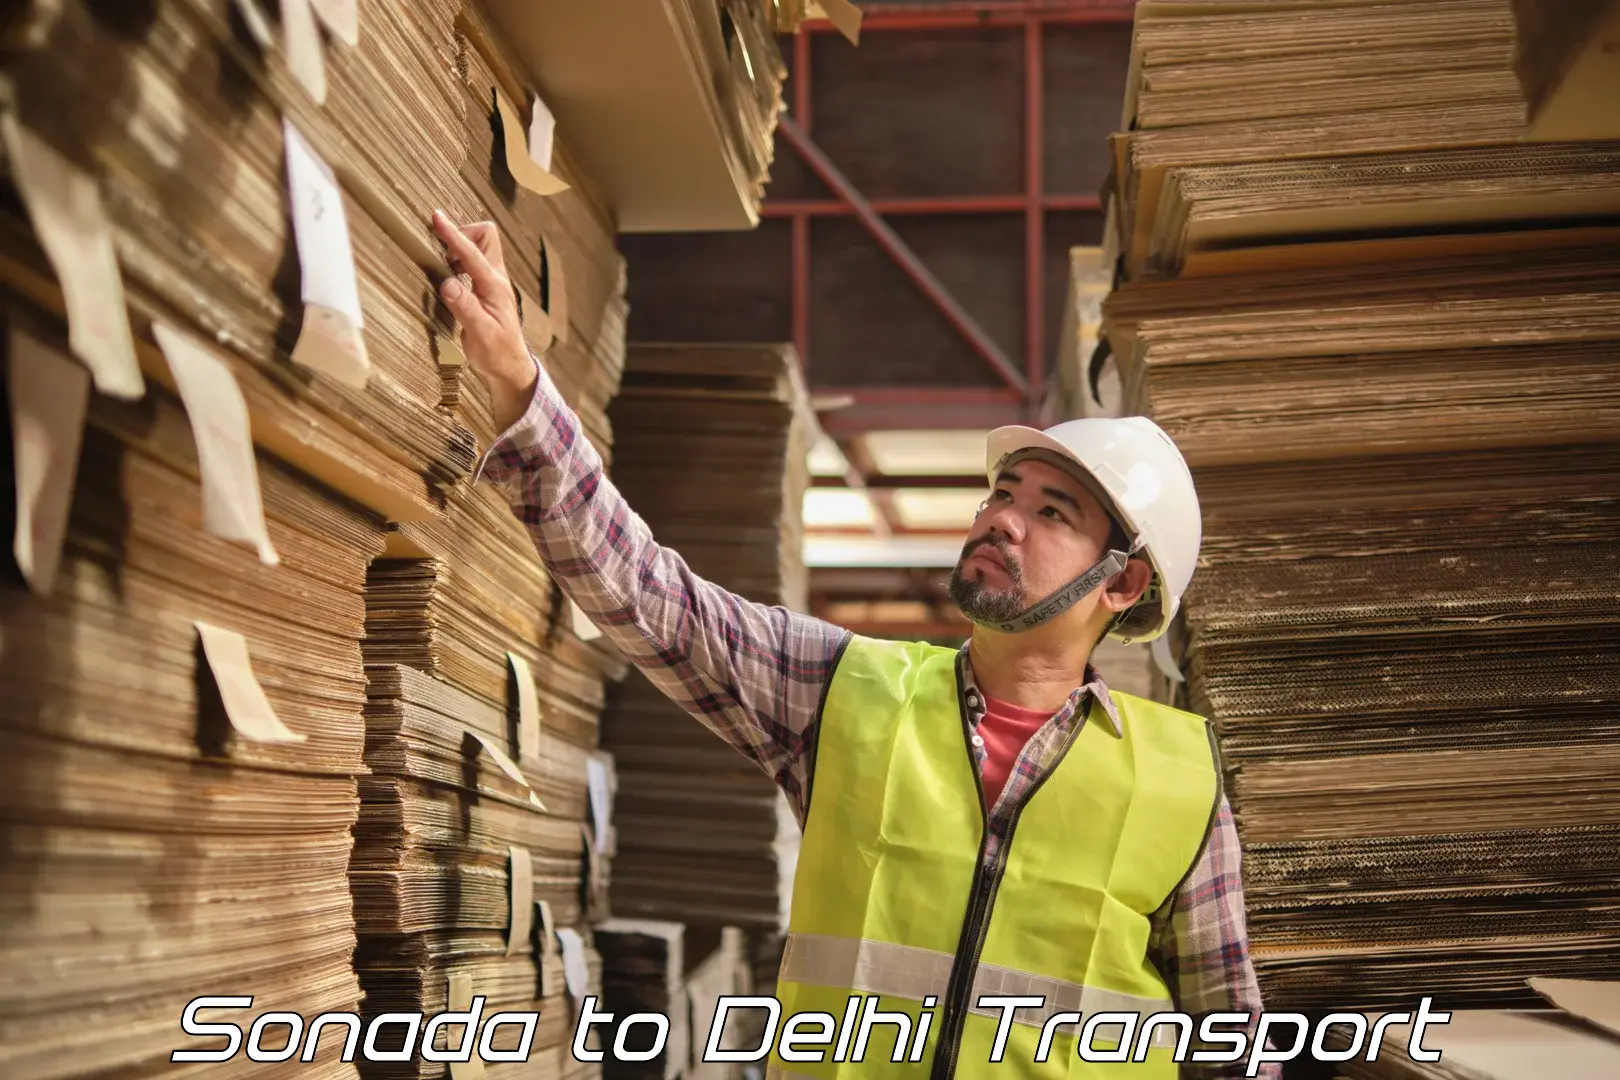 Furniture transport service Sonada to Delhi